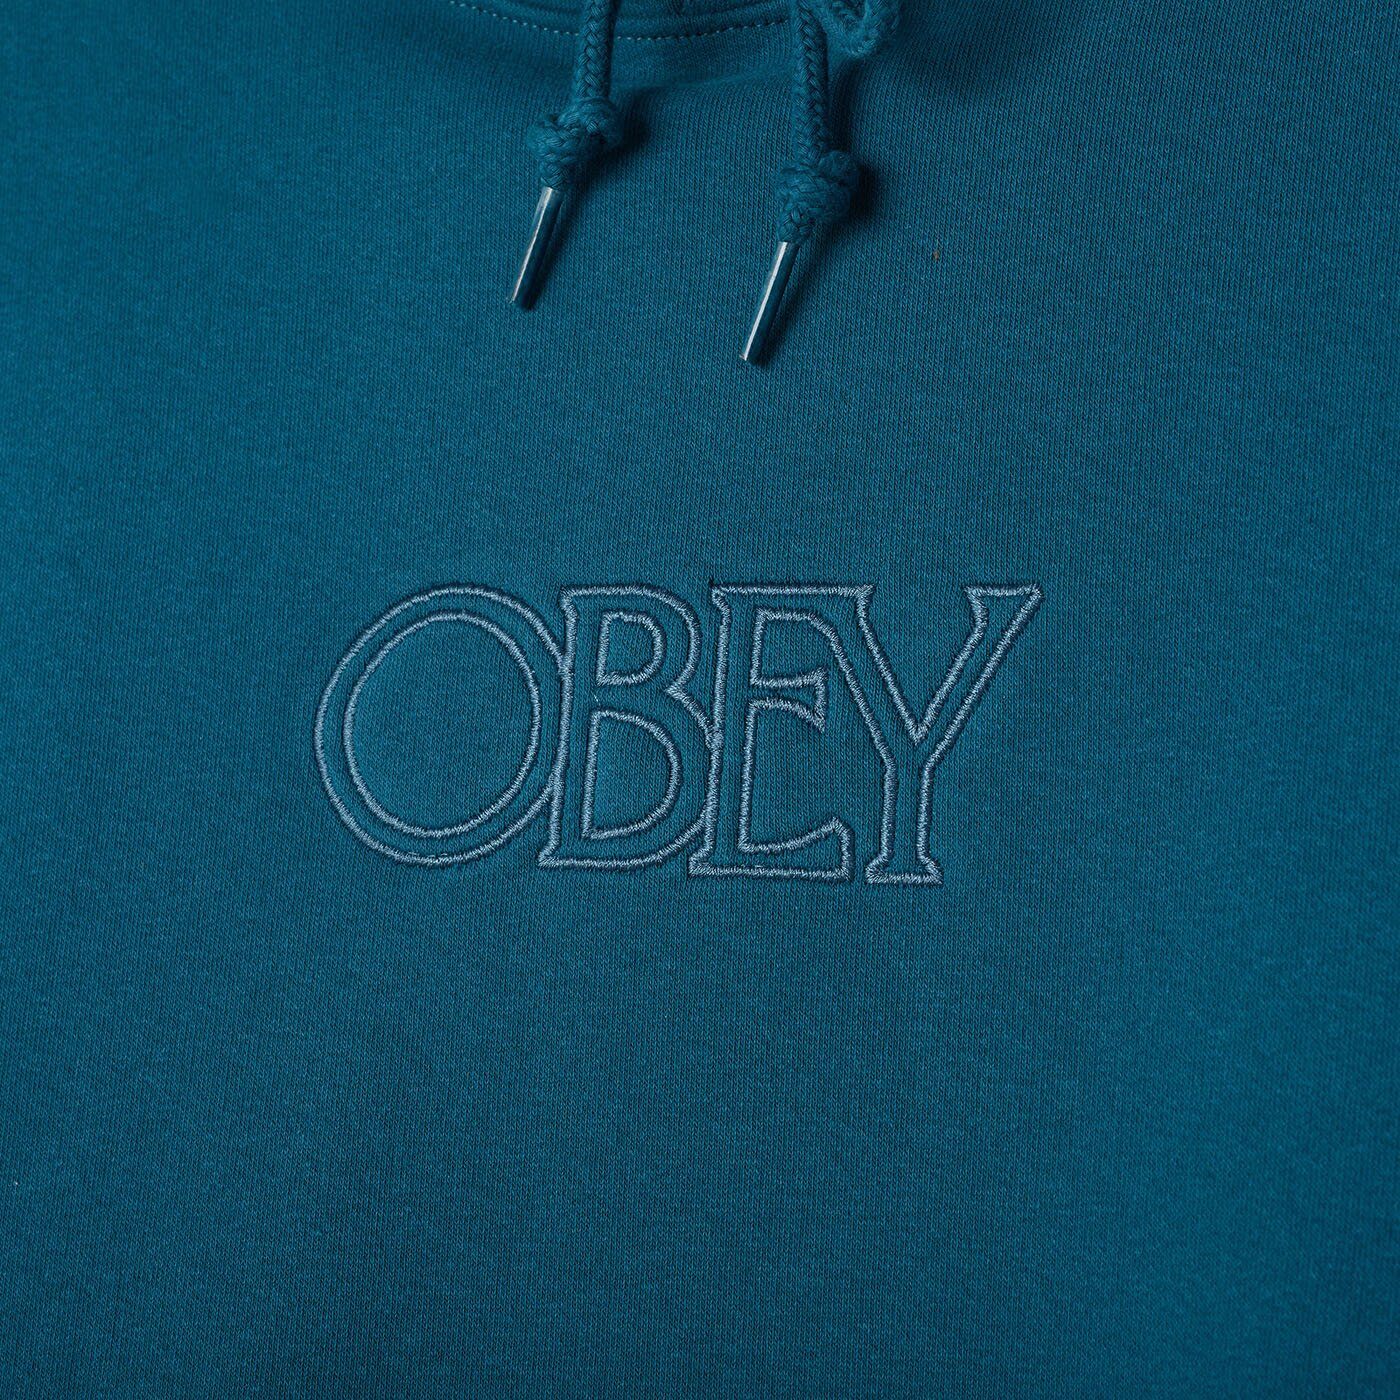 OBEY - Regal Pullover Men's Hoodie, Deep Ocean